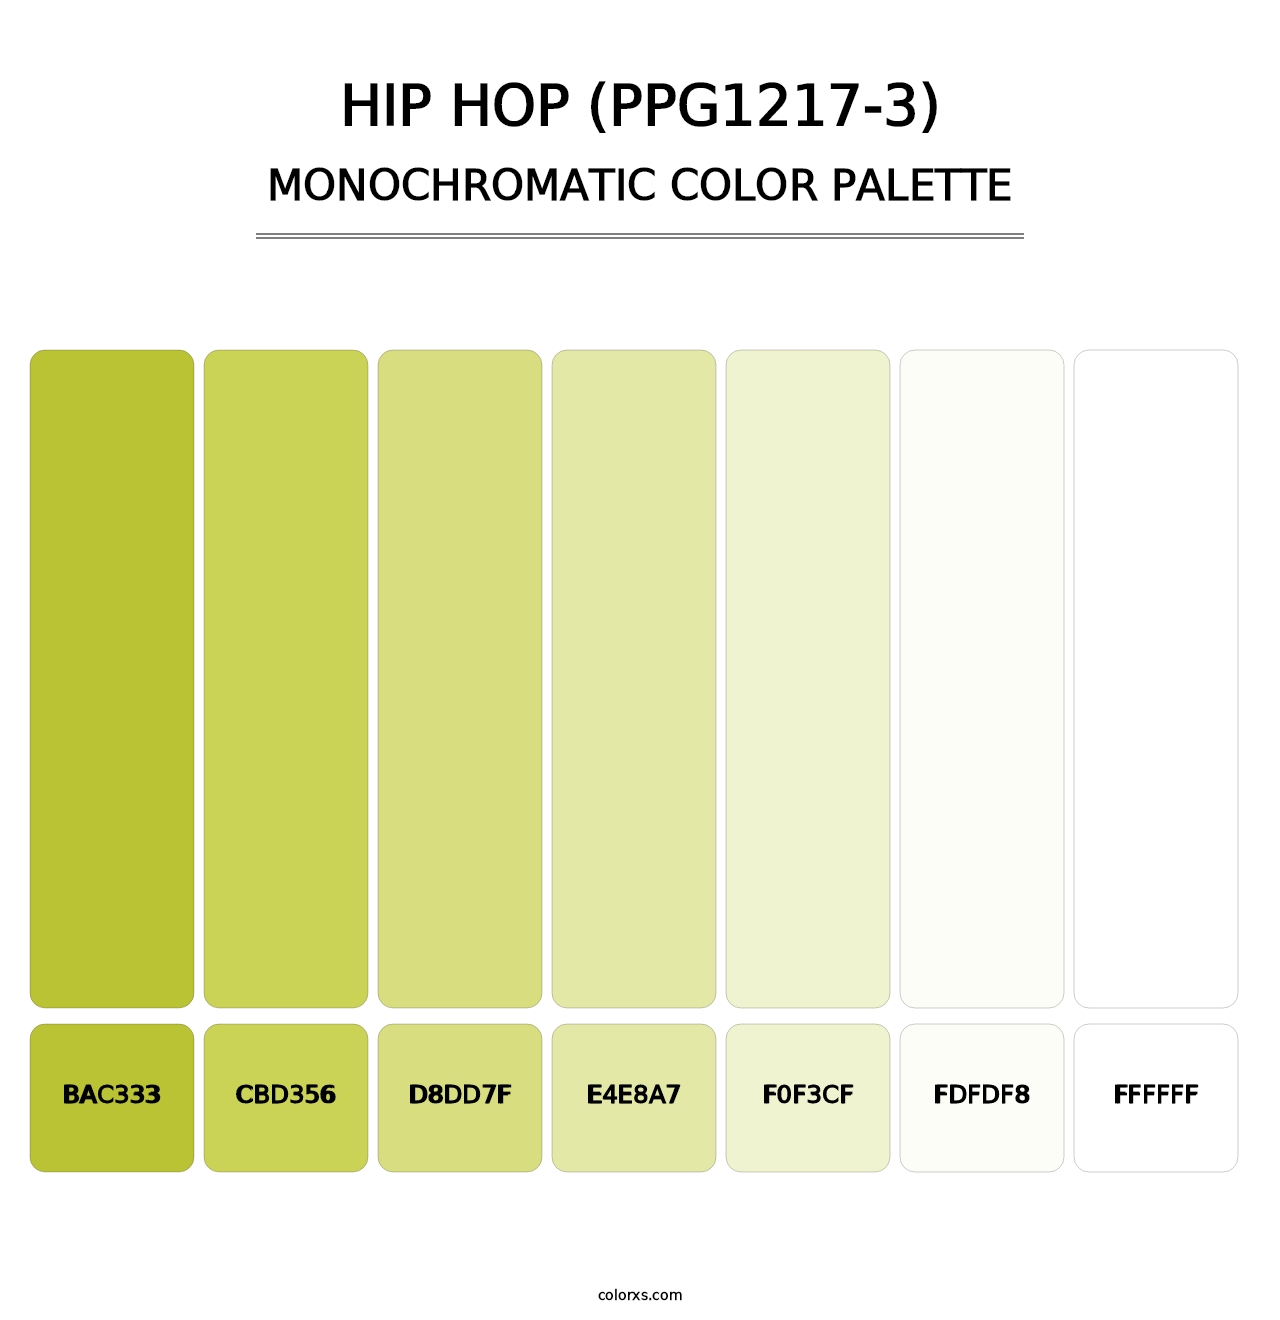 Hip Hop (PPG1217-3) - Monochromatic Color Palette